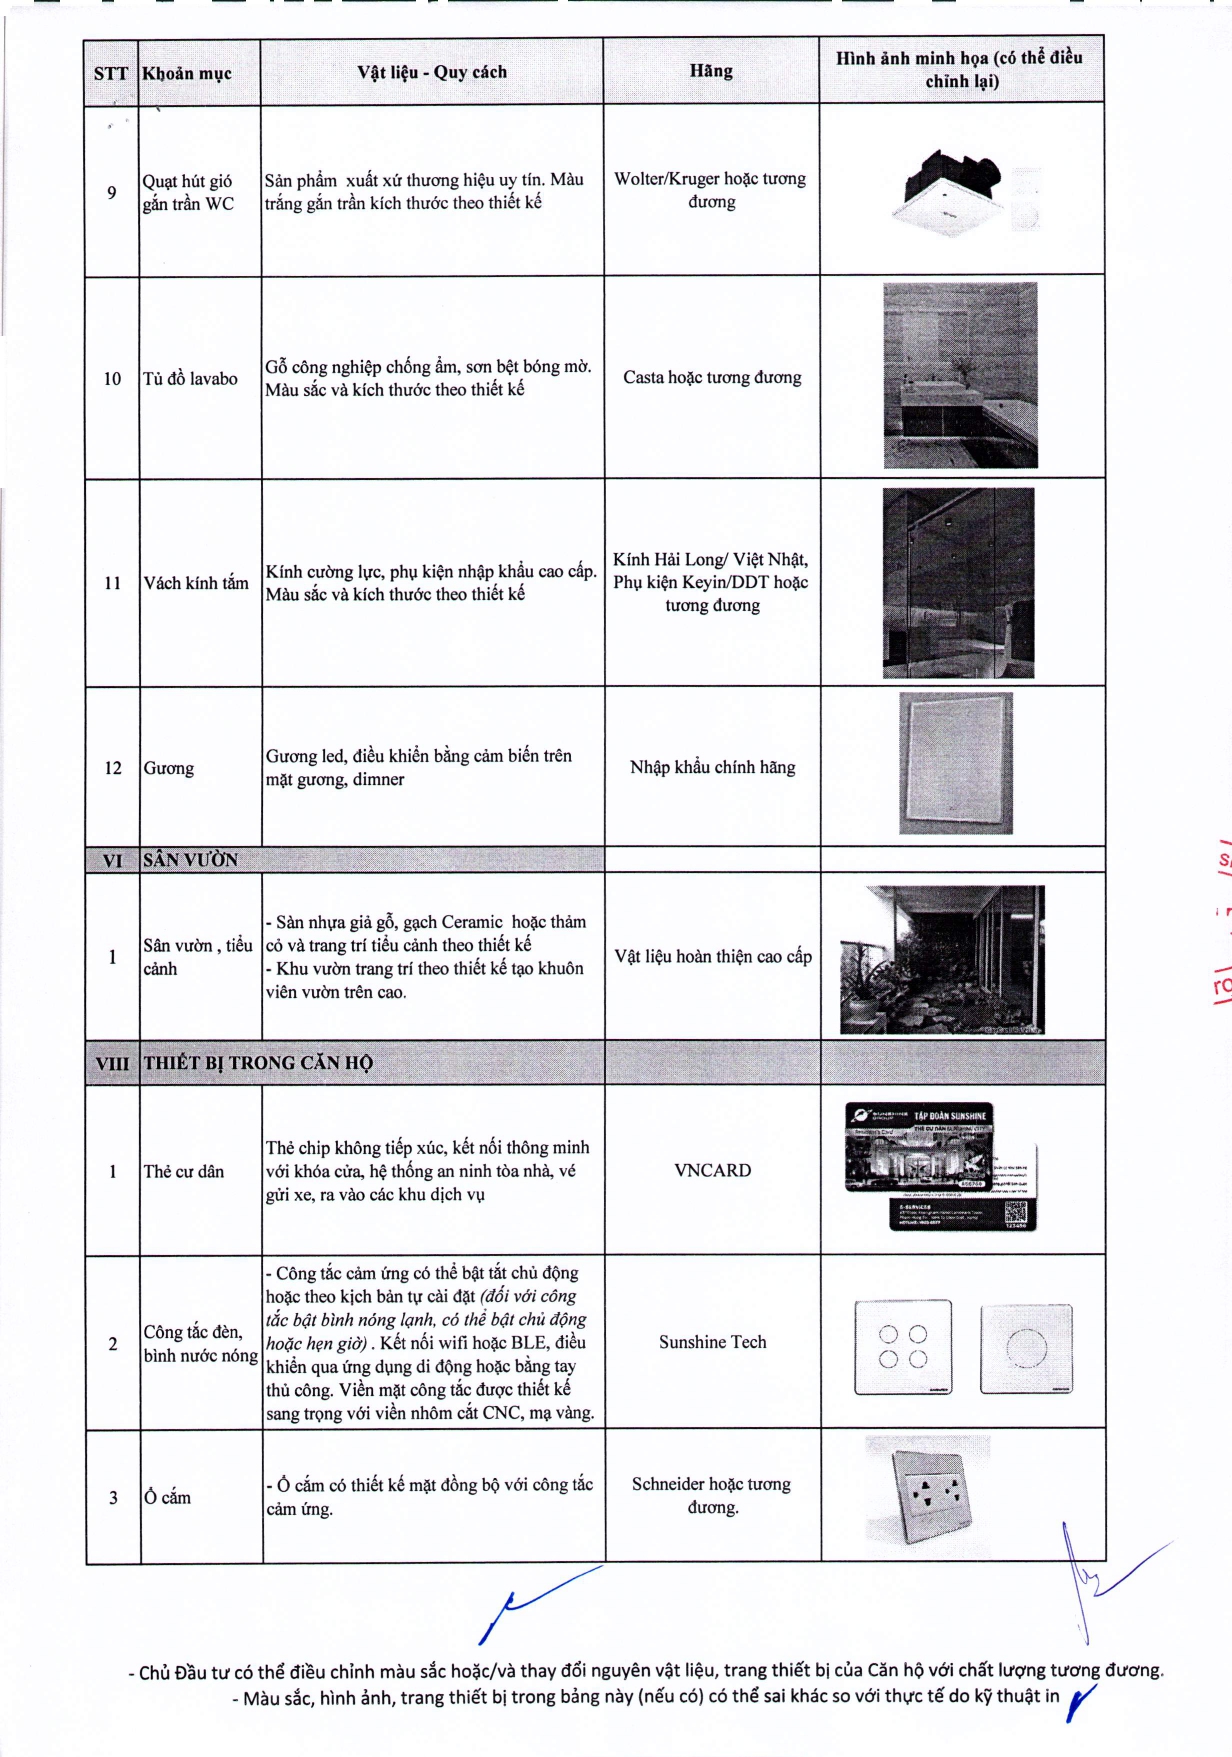 02.08.2019. Danh mục vật liệu và trang thiết bị bên trong căn hộ - Golden River (1)_page-0007